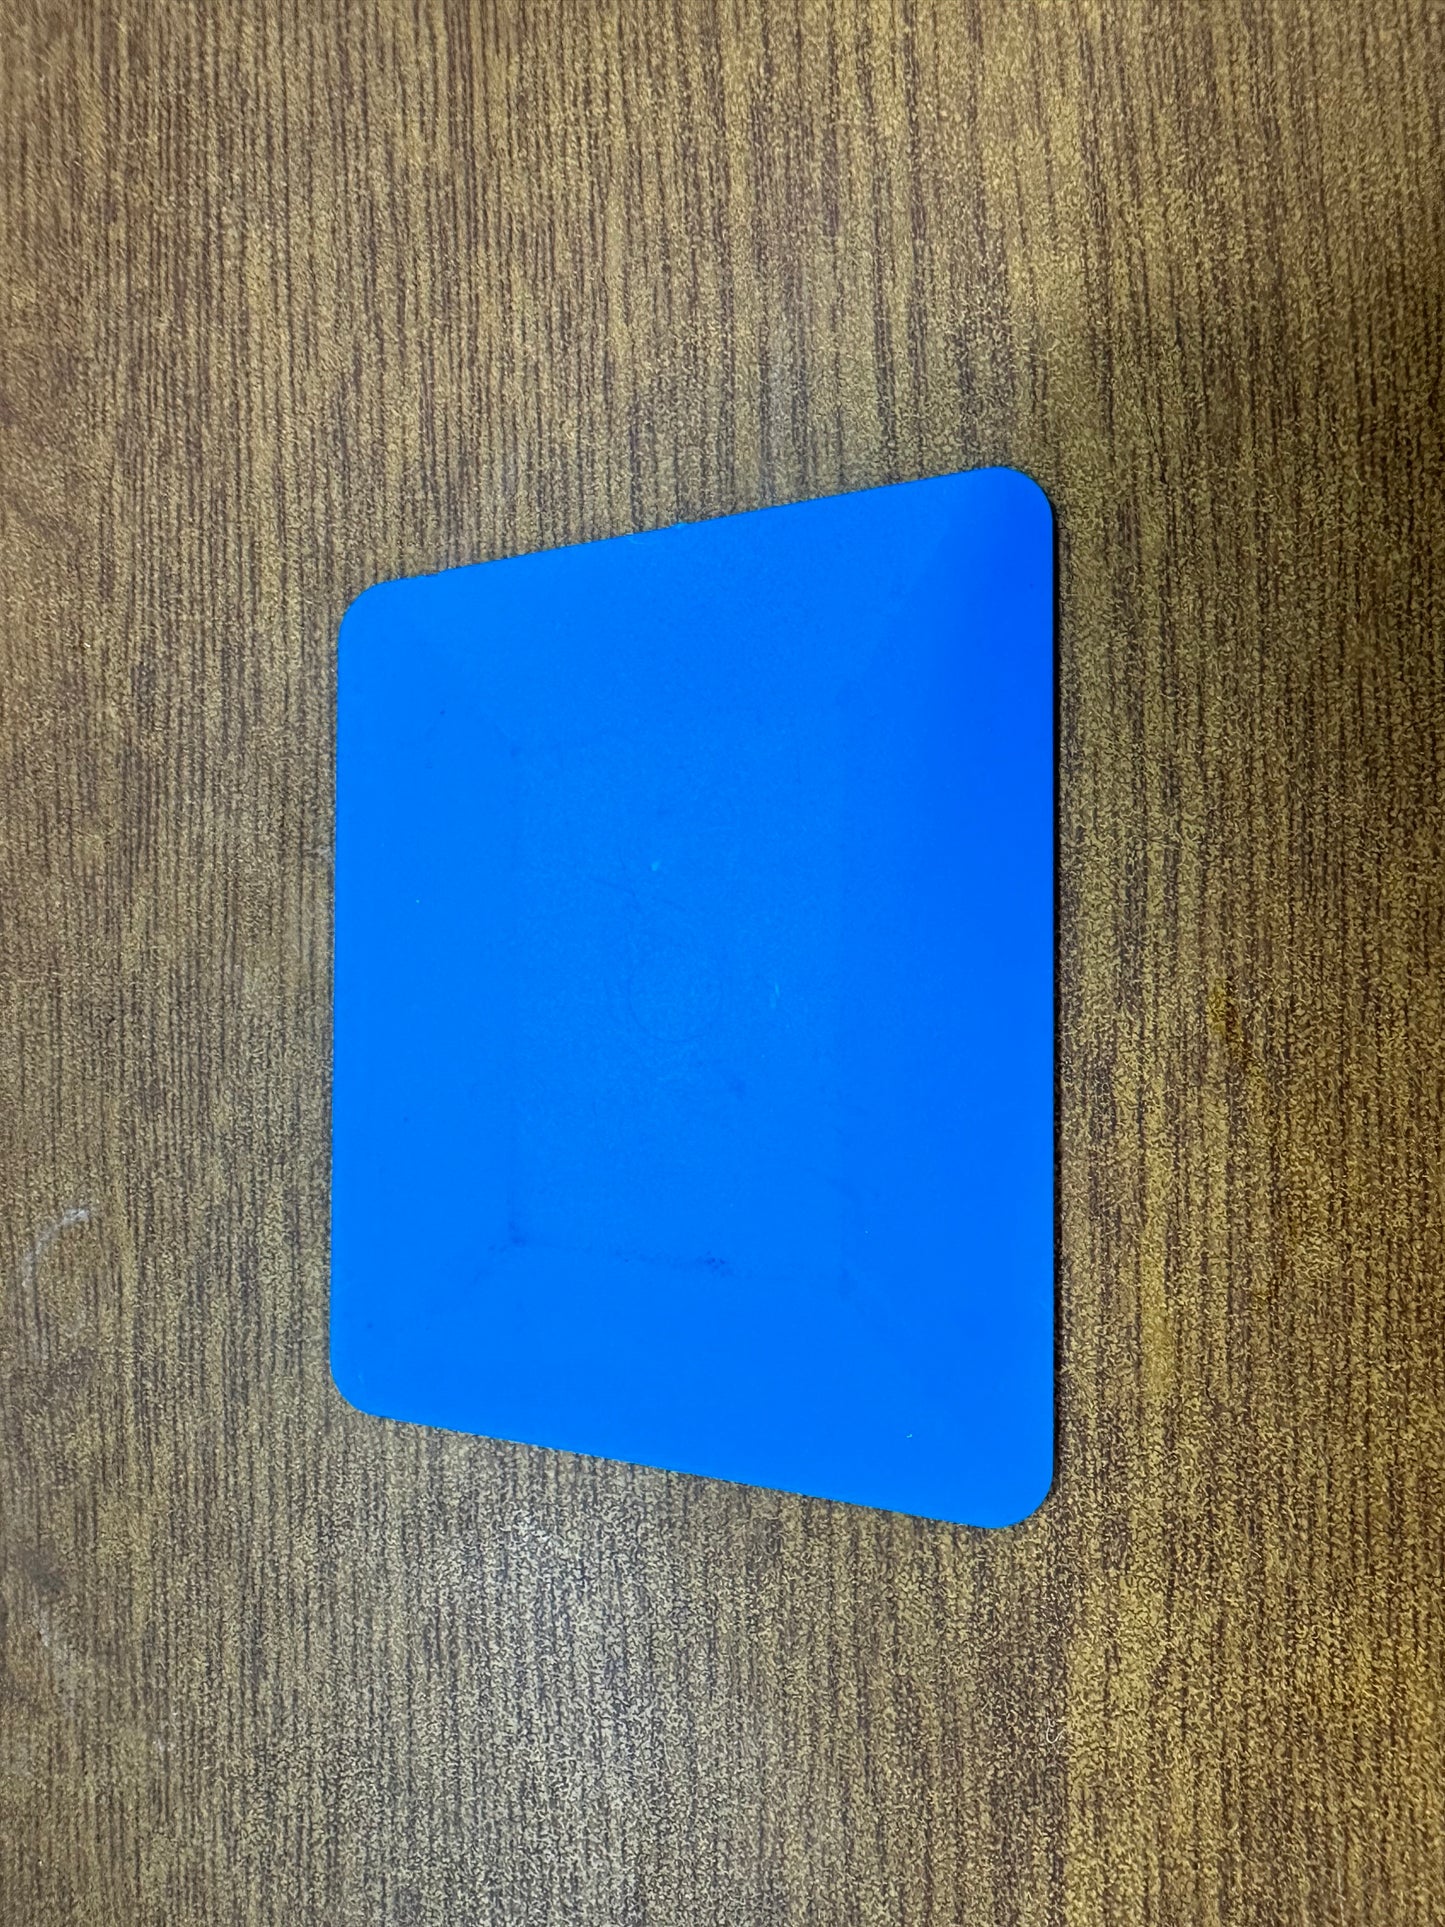 Blue Hard Card